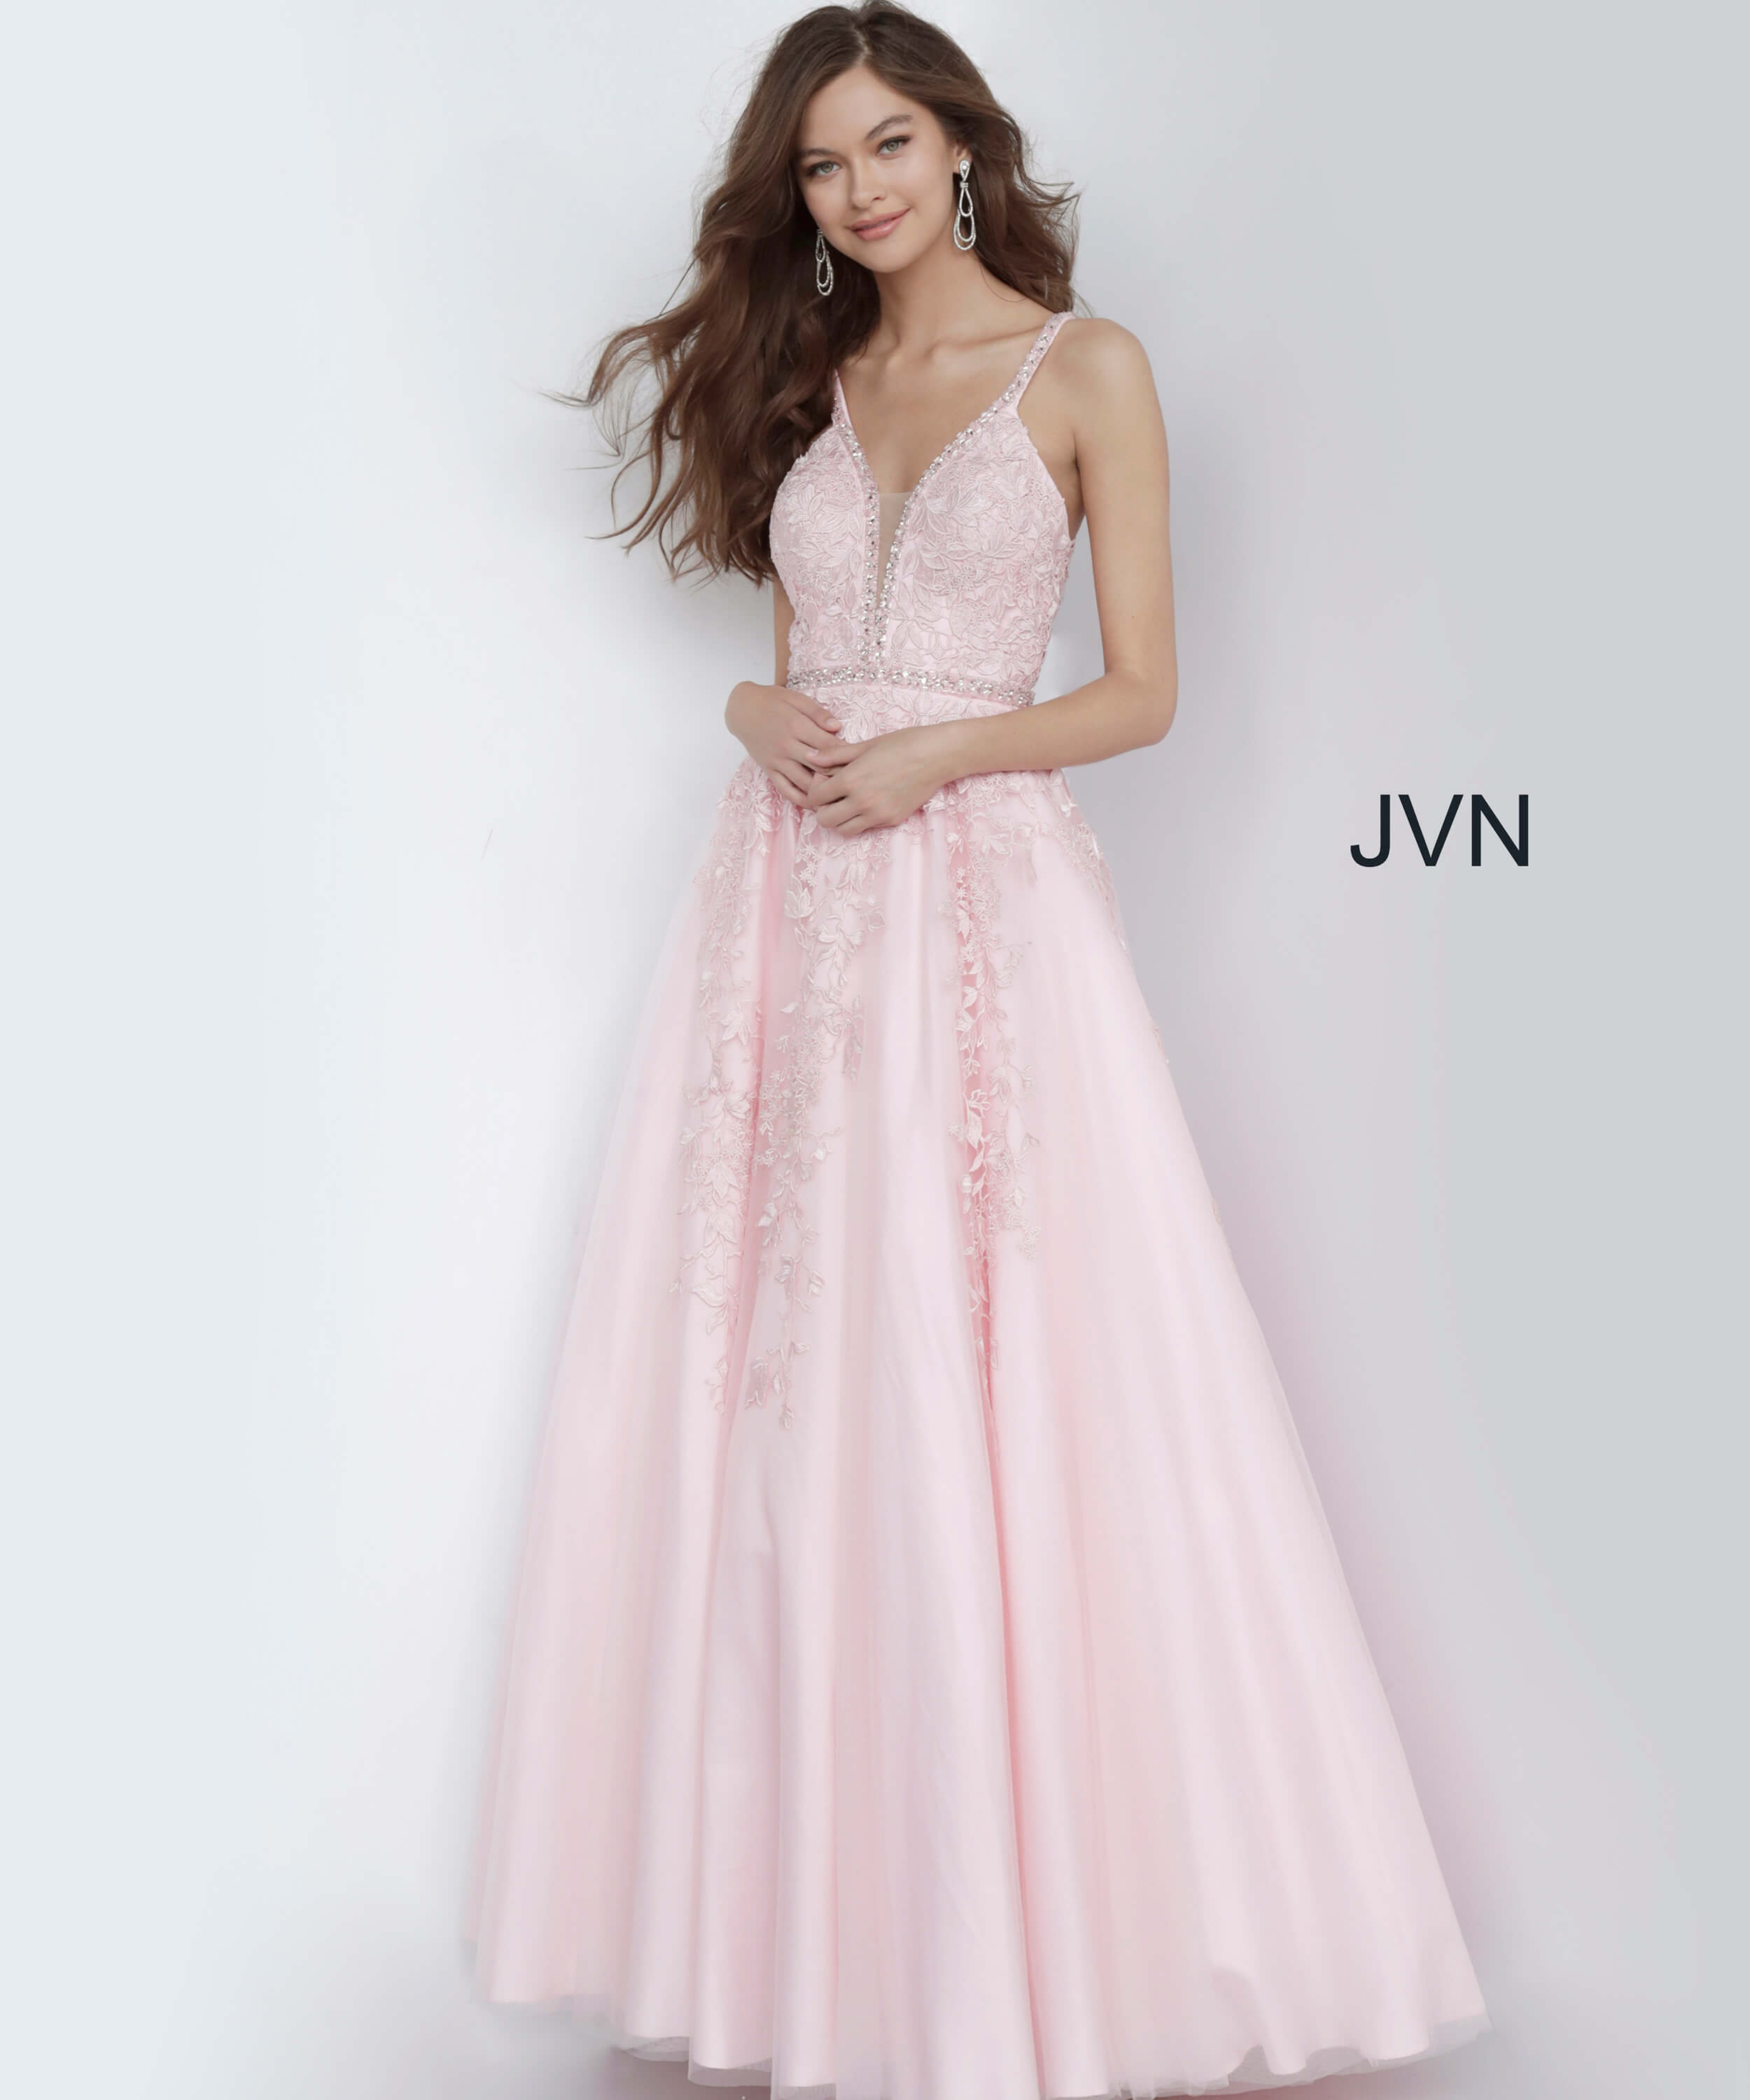 Light Pink Evening Dress Hotsell, 56 ...